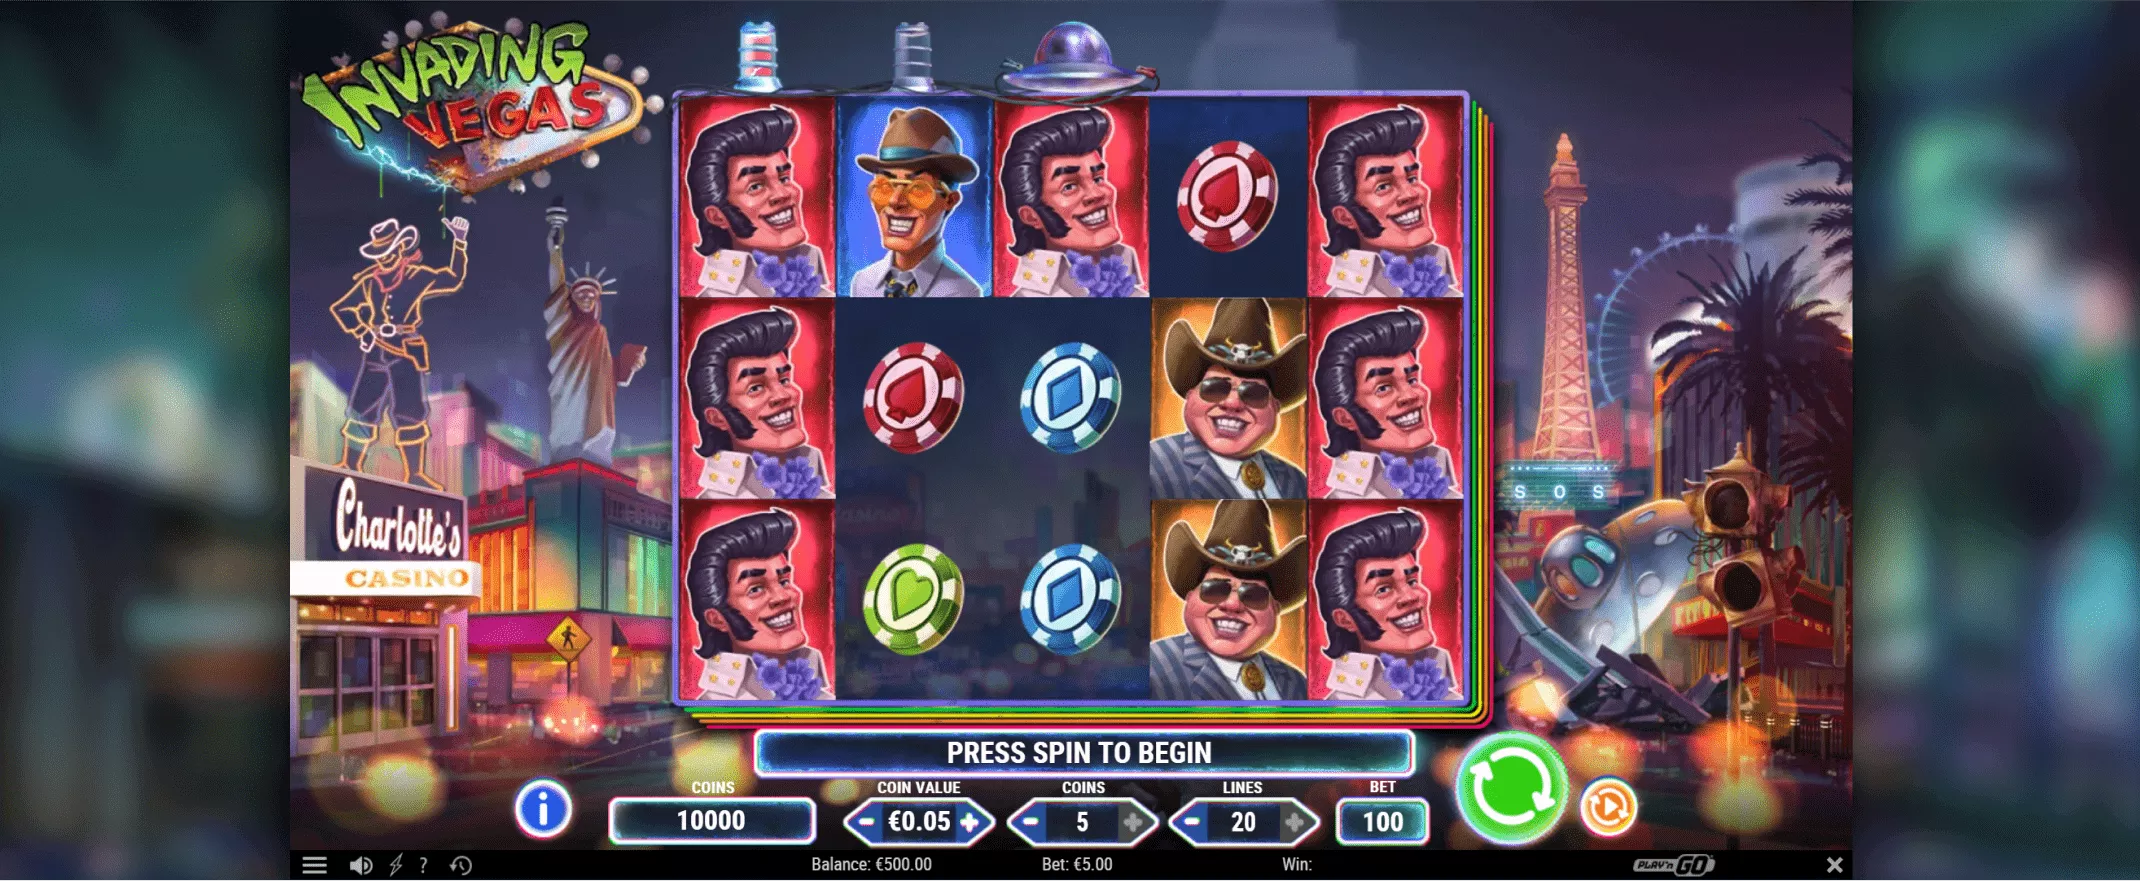 Invading Vegas spelautomat